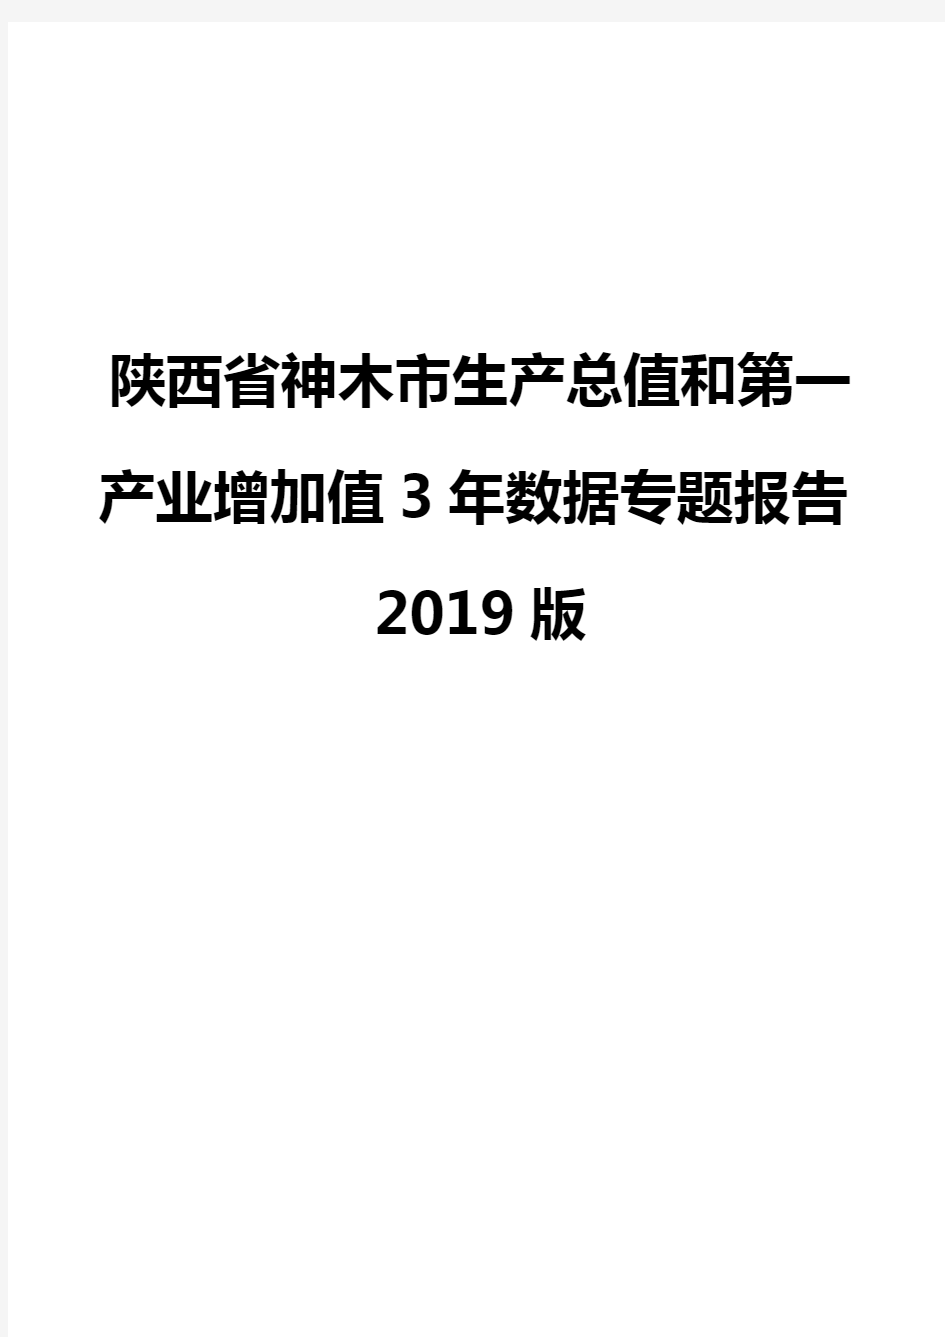 陕西省神木市生产总值和第一产业增加值3年数据专题报告2019版